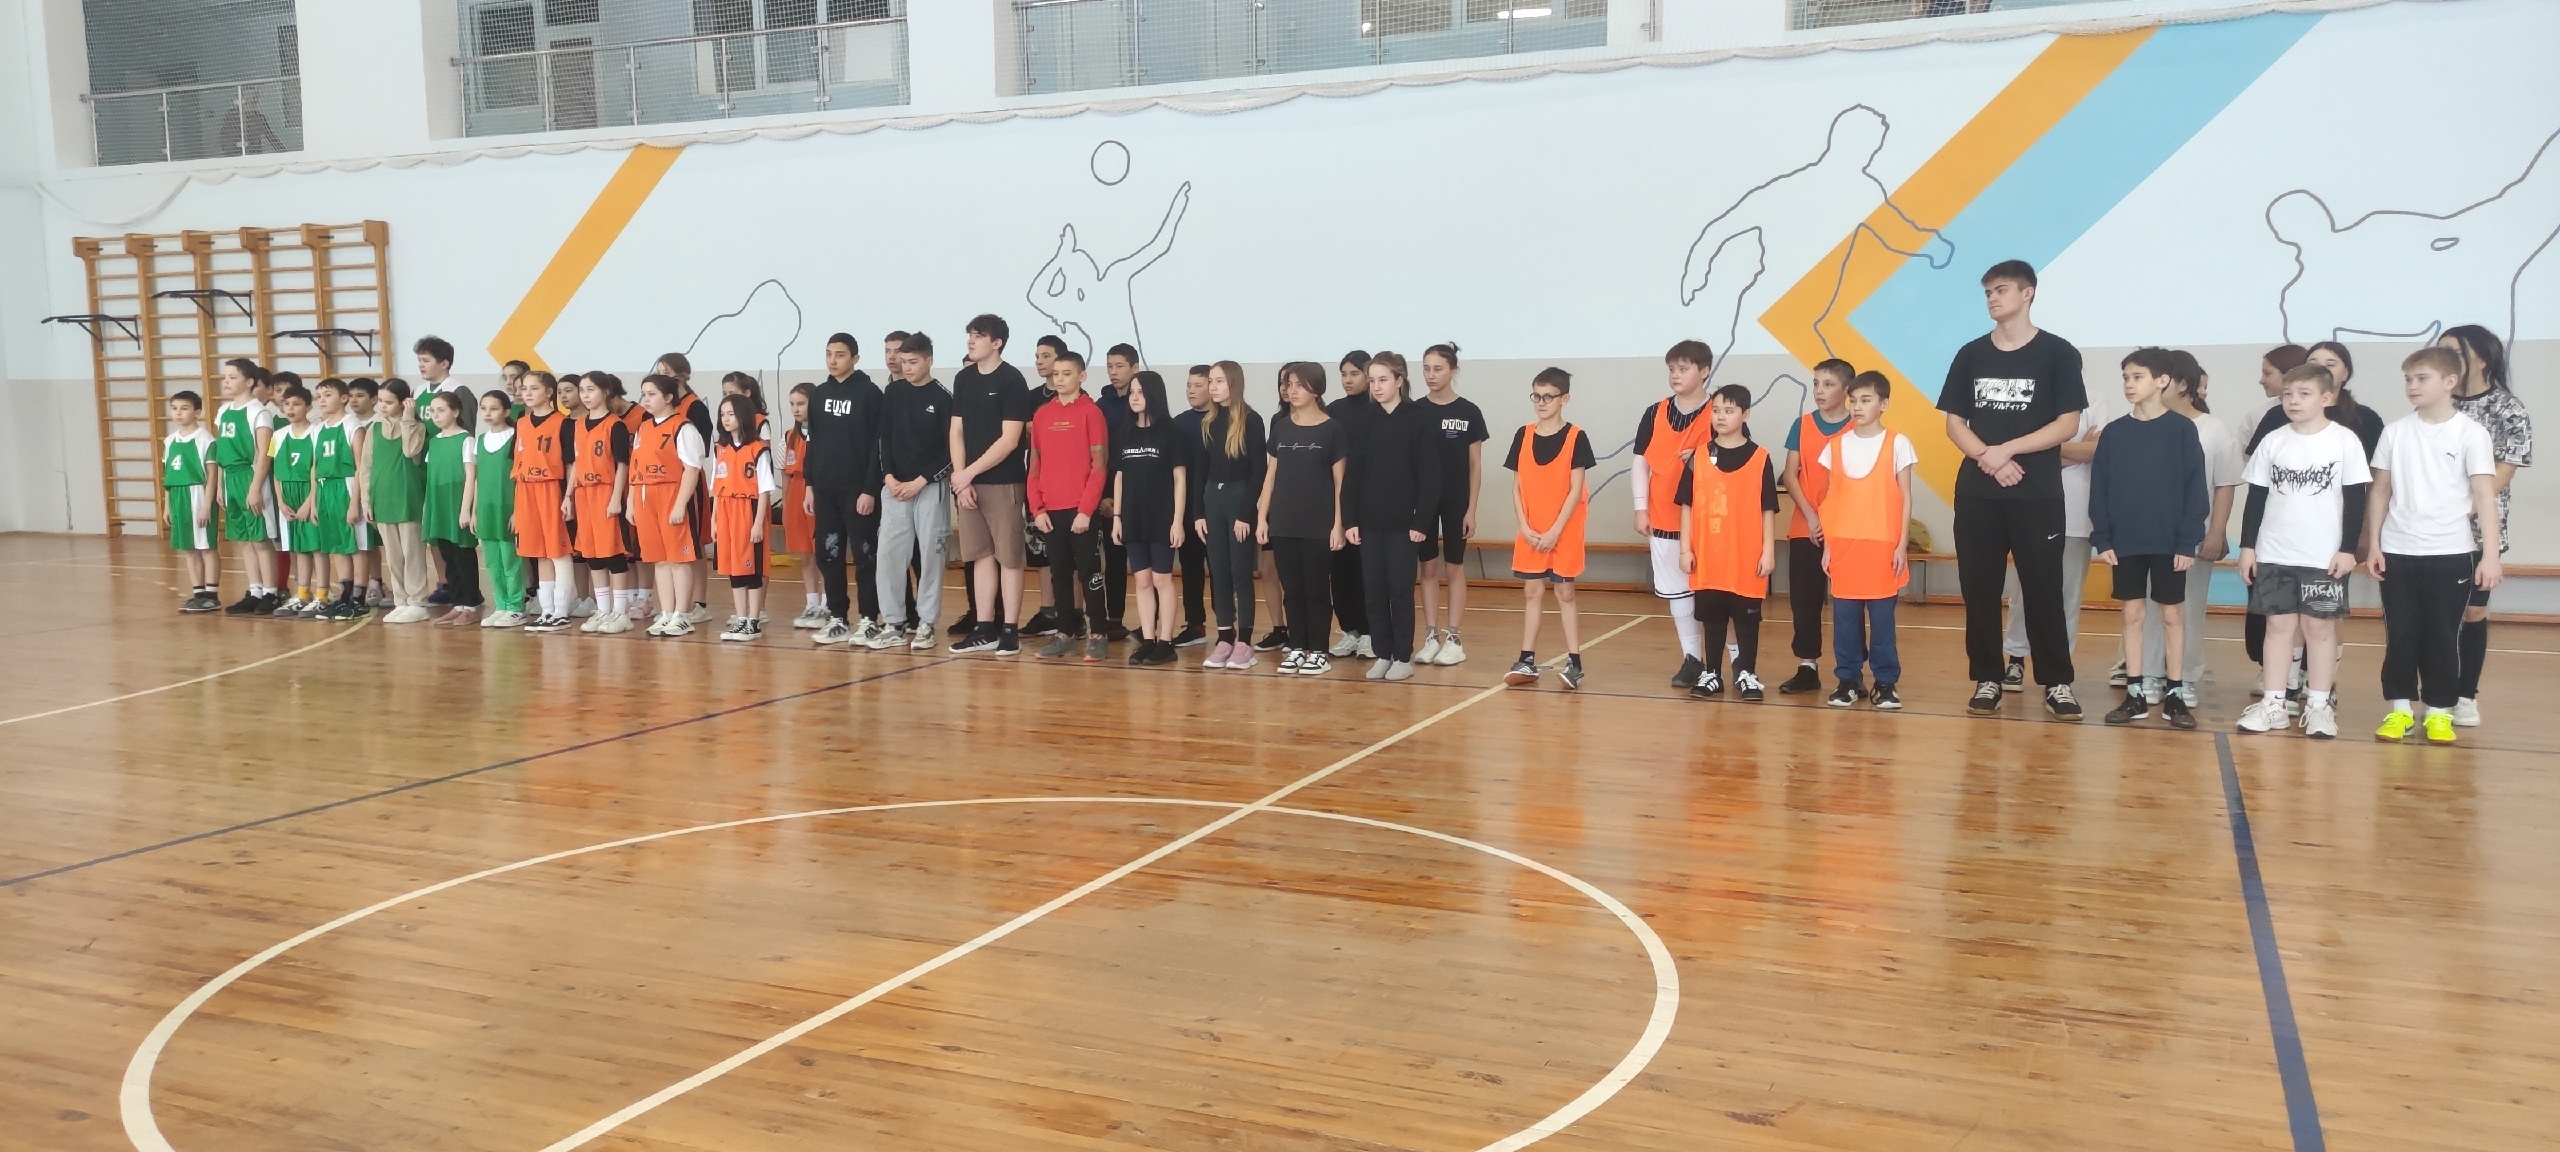 Сегодня в большом спортивном зале ДЮСШ прошли районные соревнования по баскетболу, посвящённые памяти Хафизова Айдара, погибшего в зоне СВО